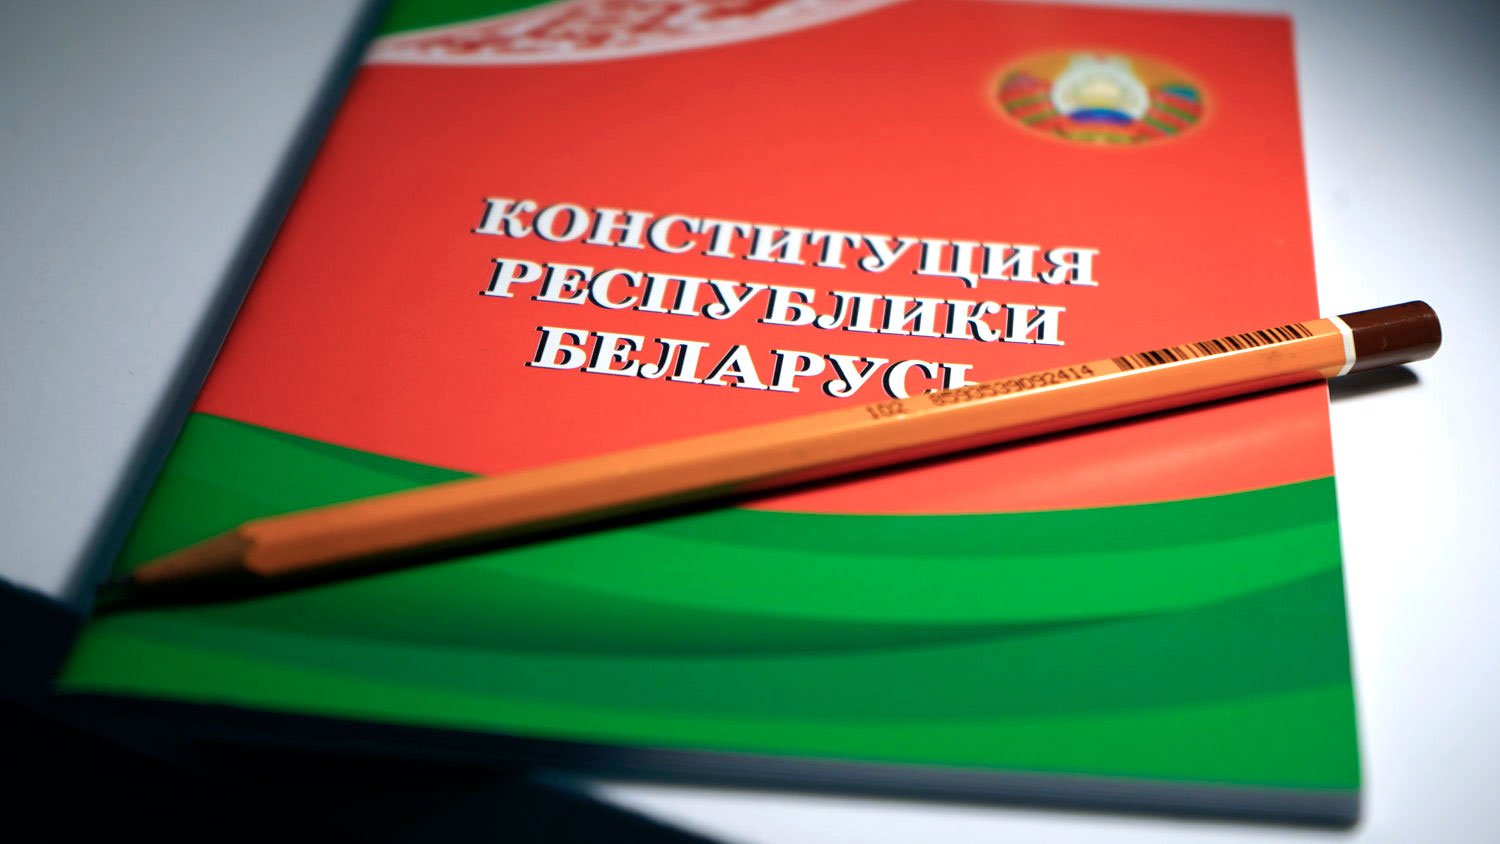 Рассматриваем проект новой Конституции Республики Беларусь